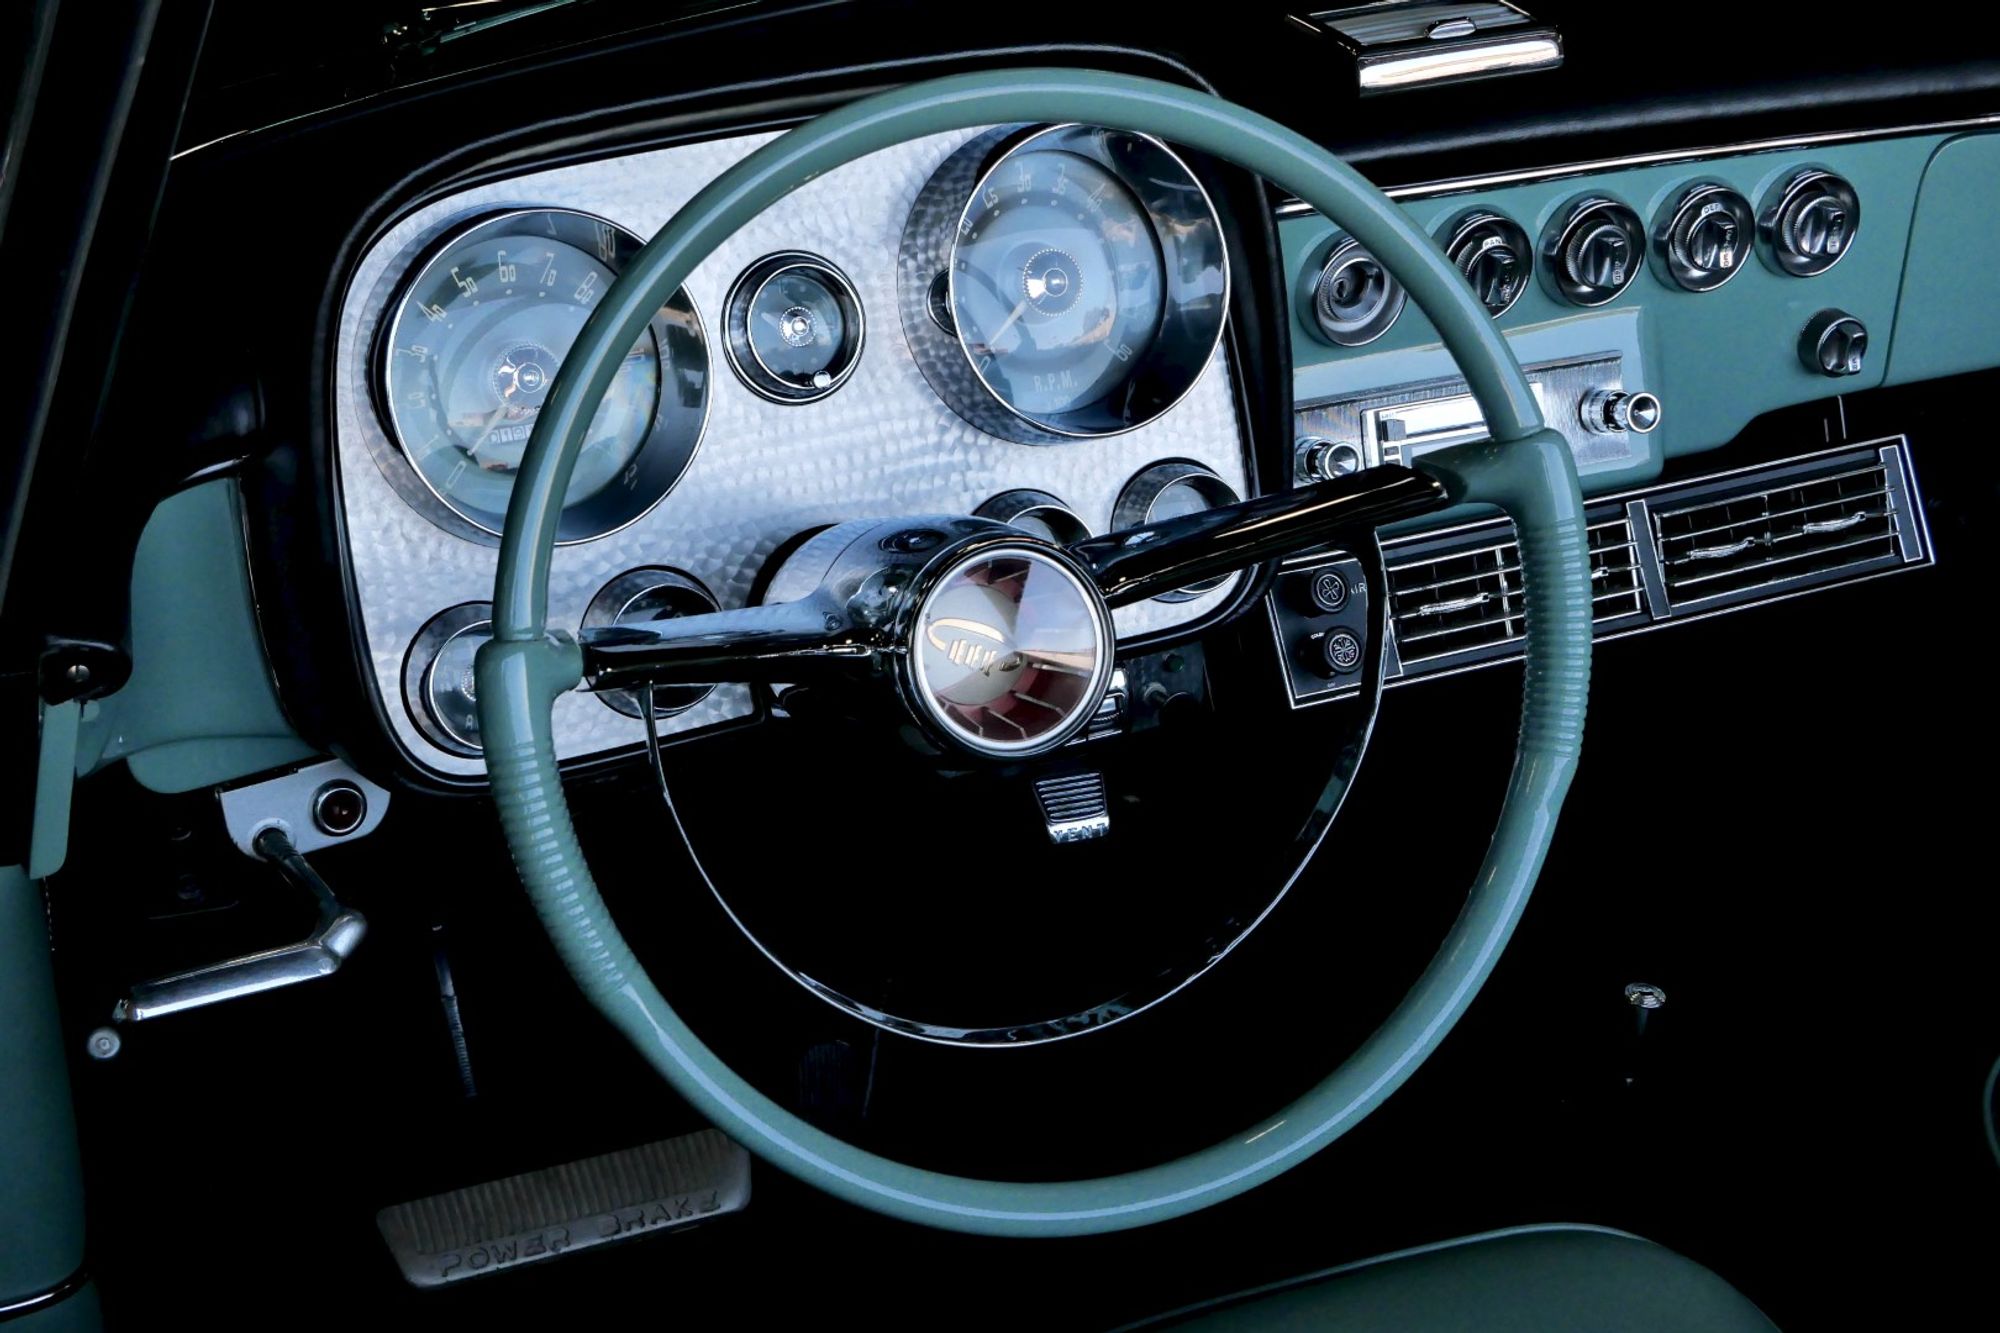 1958 Dual-Motors Dual-Ghia Convertible